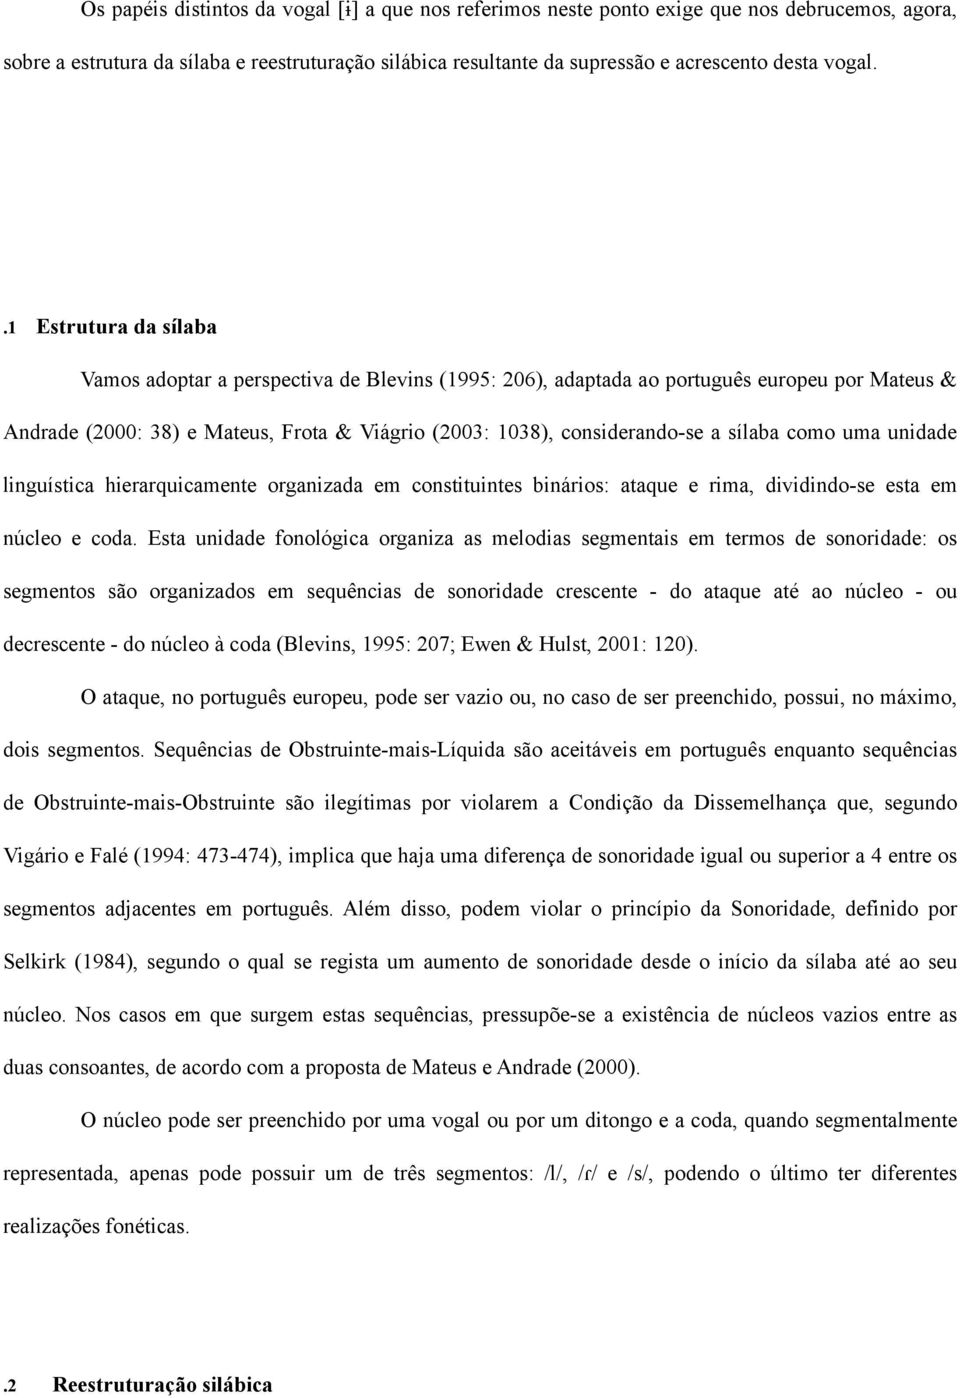 .1 Estrutura da sílaba Vamos adoptar a perspectiva de Blevins (1995: 206), adaptada ao português europeu por Mateus & Andrade (2000: 38) e Mateus, Frota & Viágrio (2003: 1038), considerando-se a